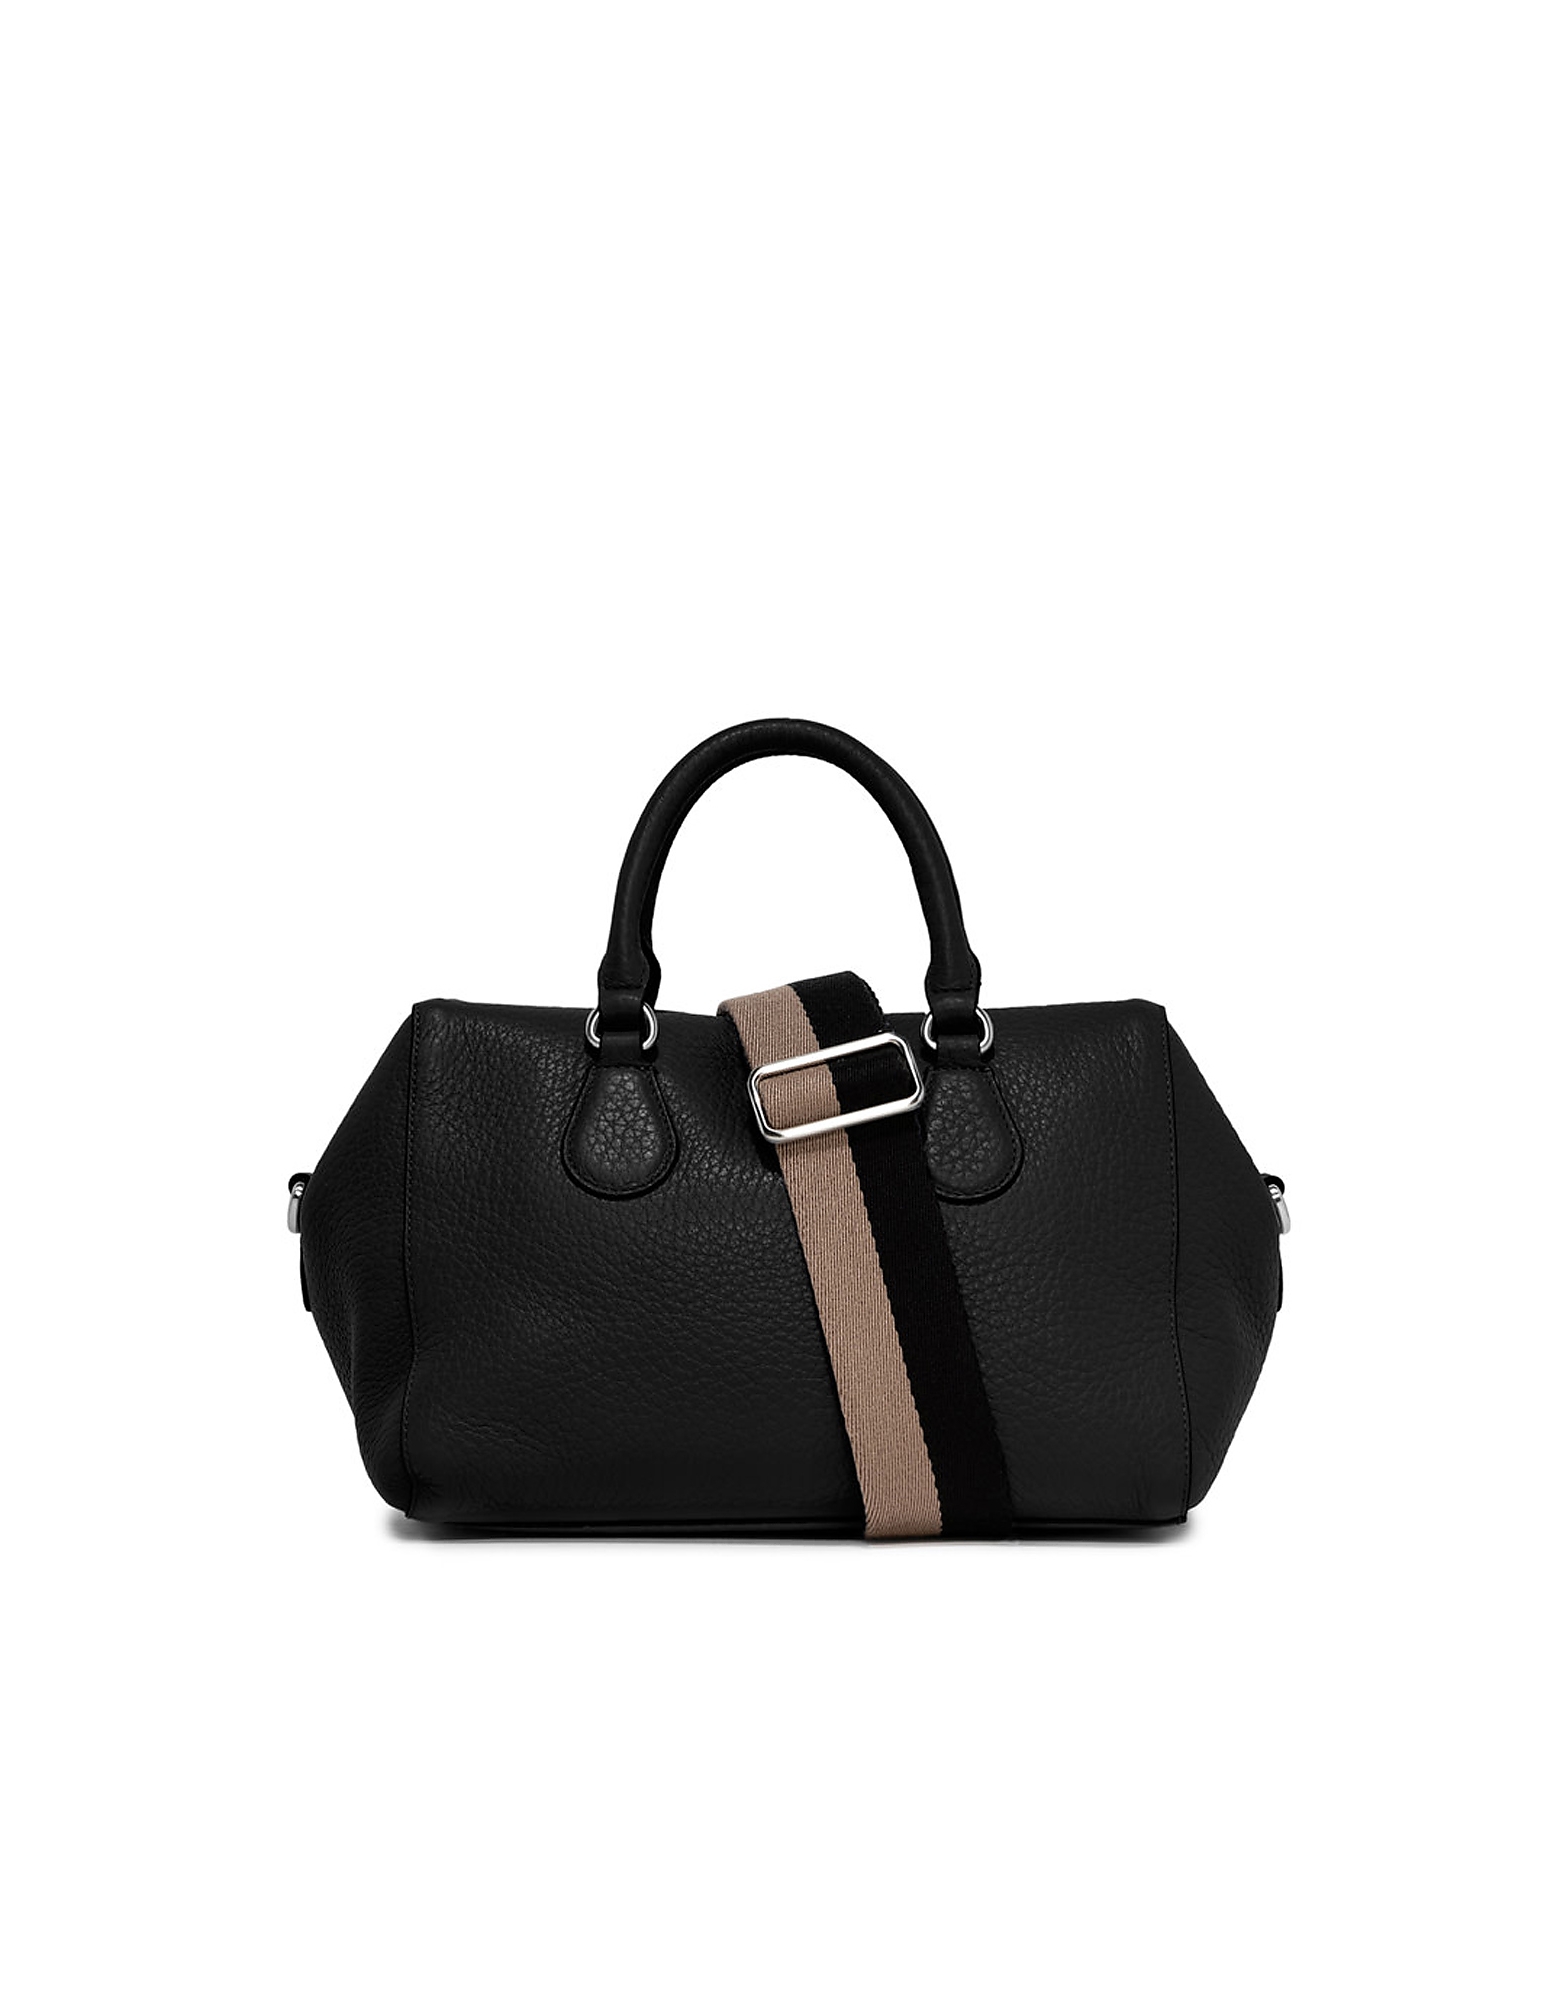 Gianni Chiarini Designer Handbags Women's Black Bag In Noir